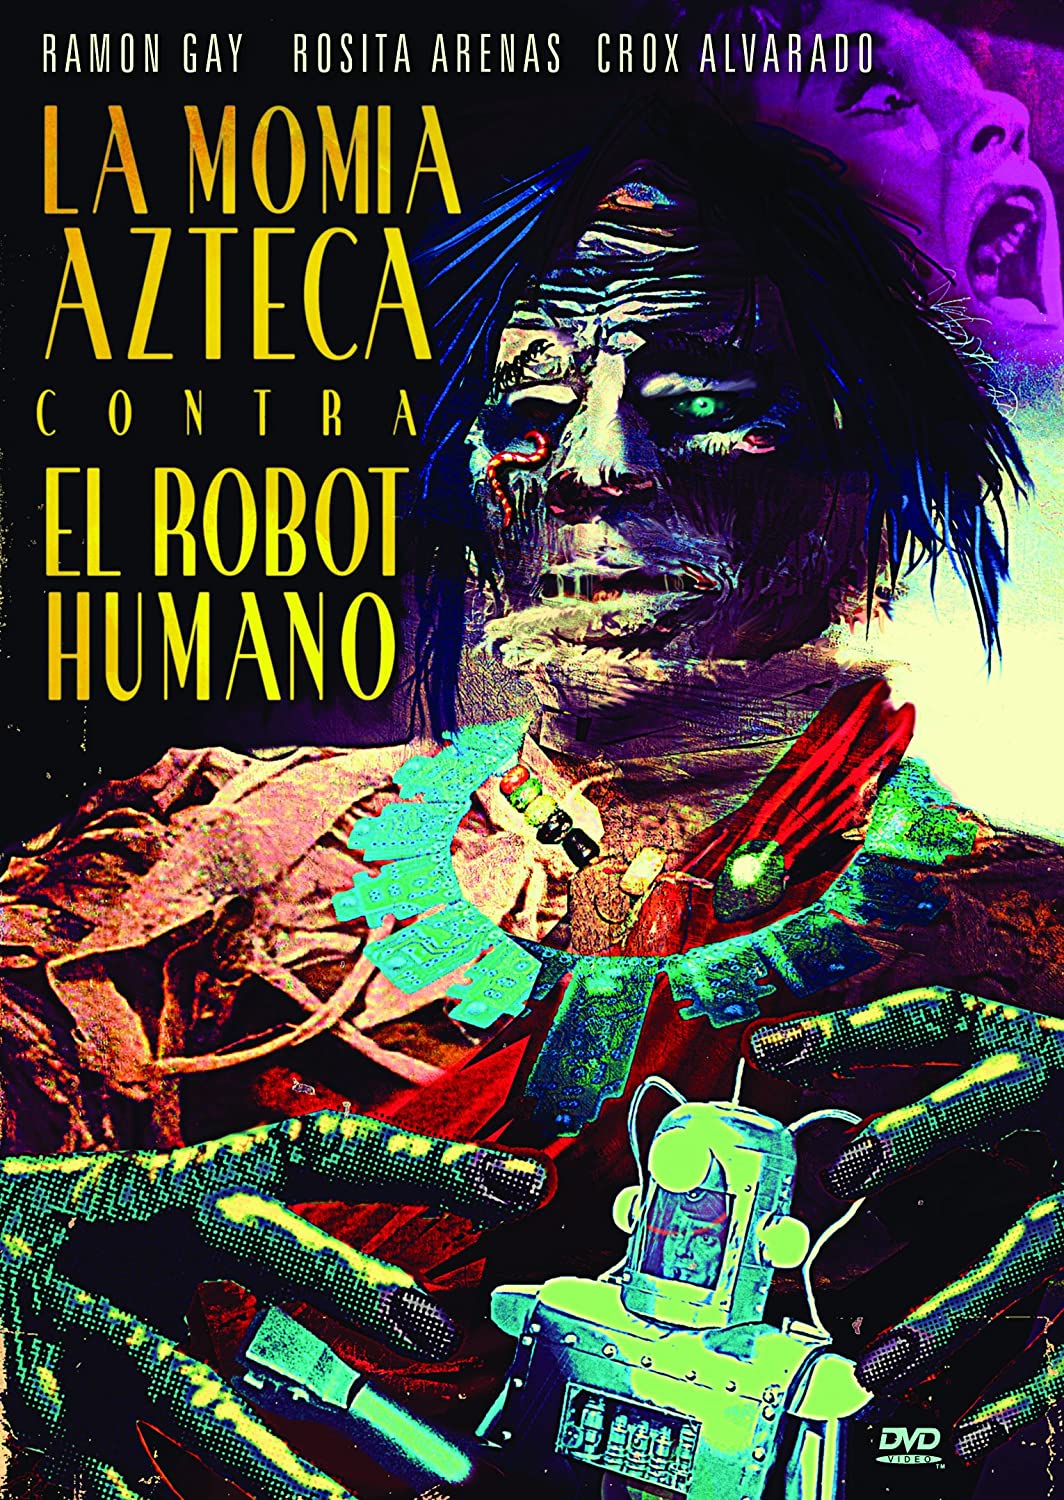 La Momia Azteca Contra El Robot Humano Dvd